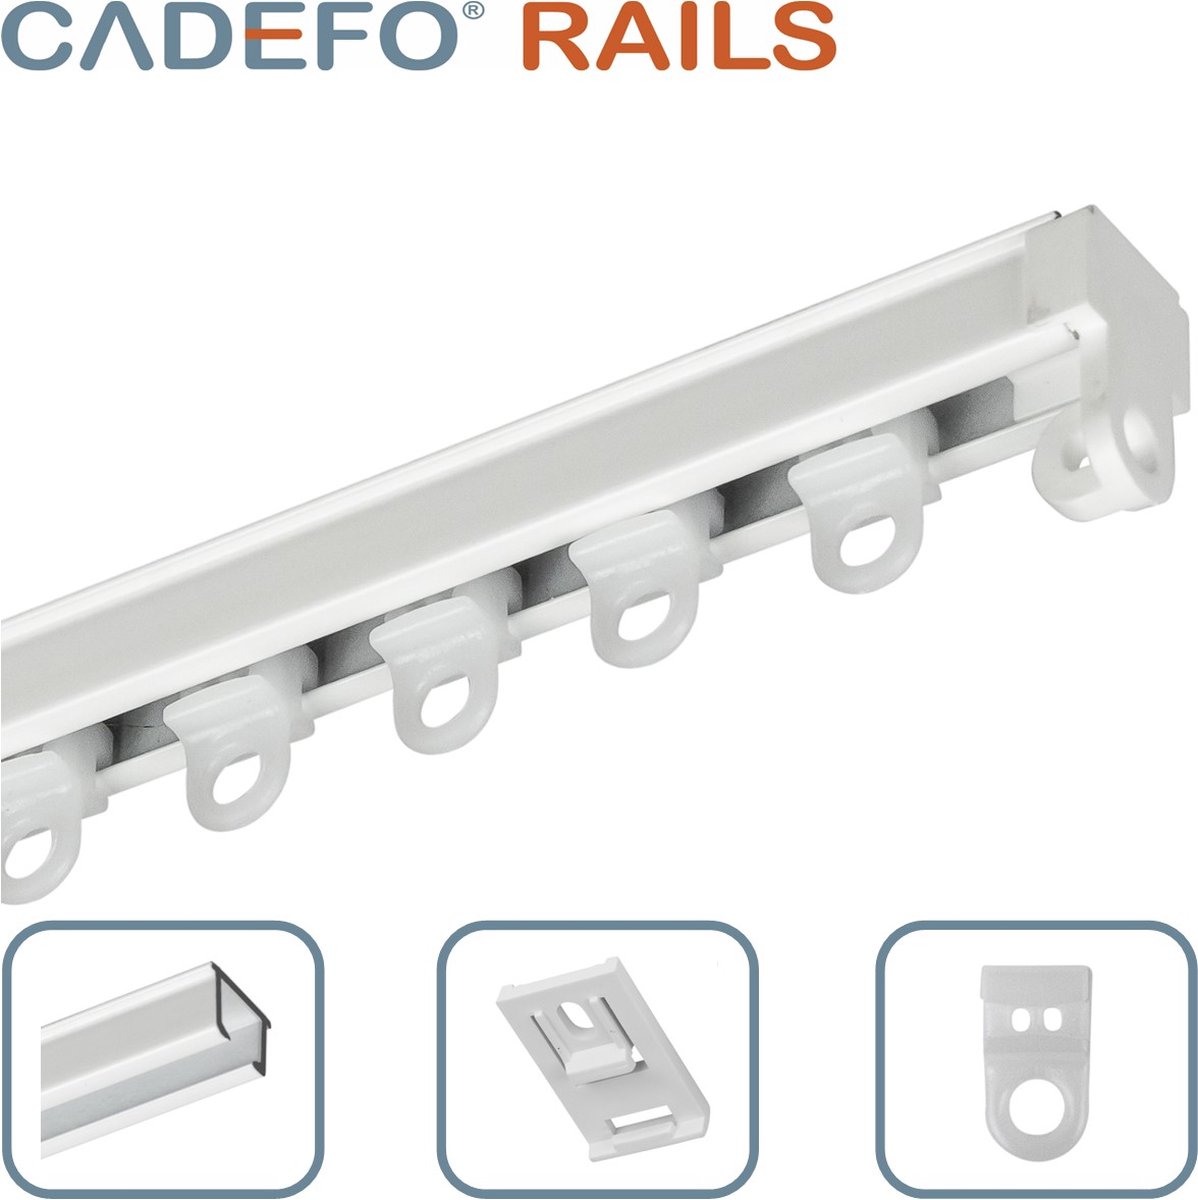 CADEFO RAILS (551 - 600 cm) Gordijnrails - Compleet op maat! - UIT 1 STUK - Leverbaar tot 6 meter - Plafondbevestiging - Lengte 591 cm